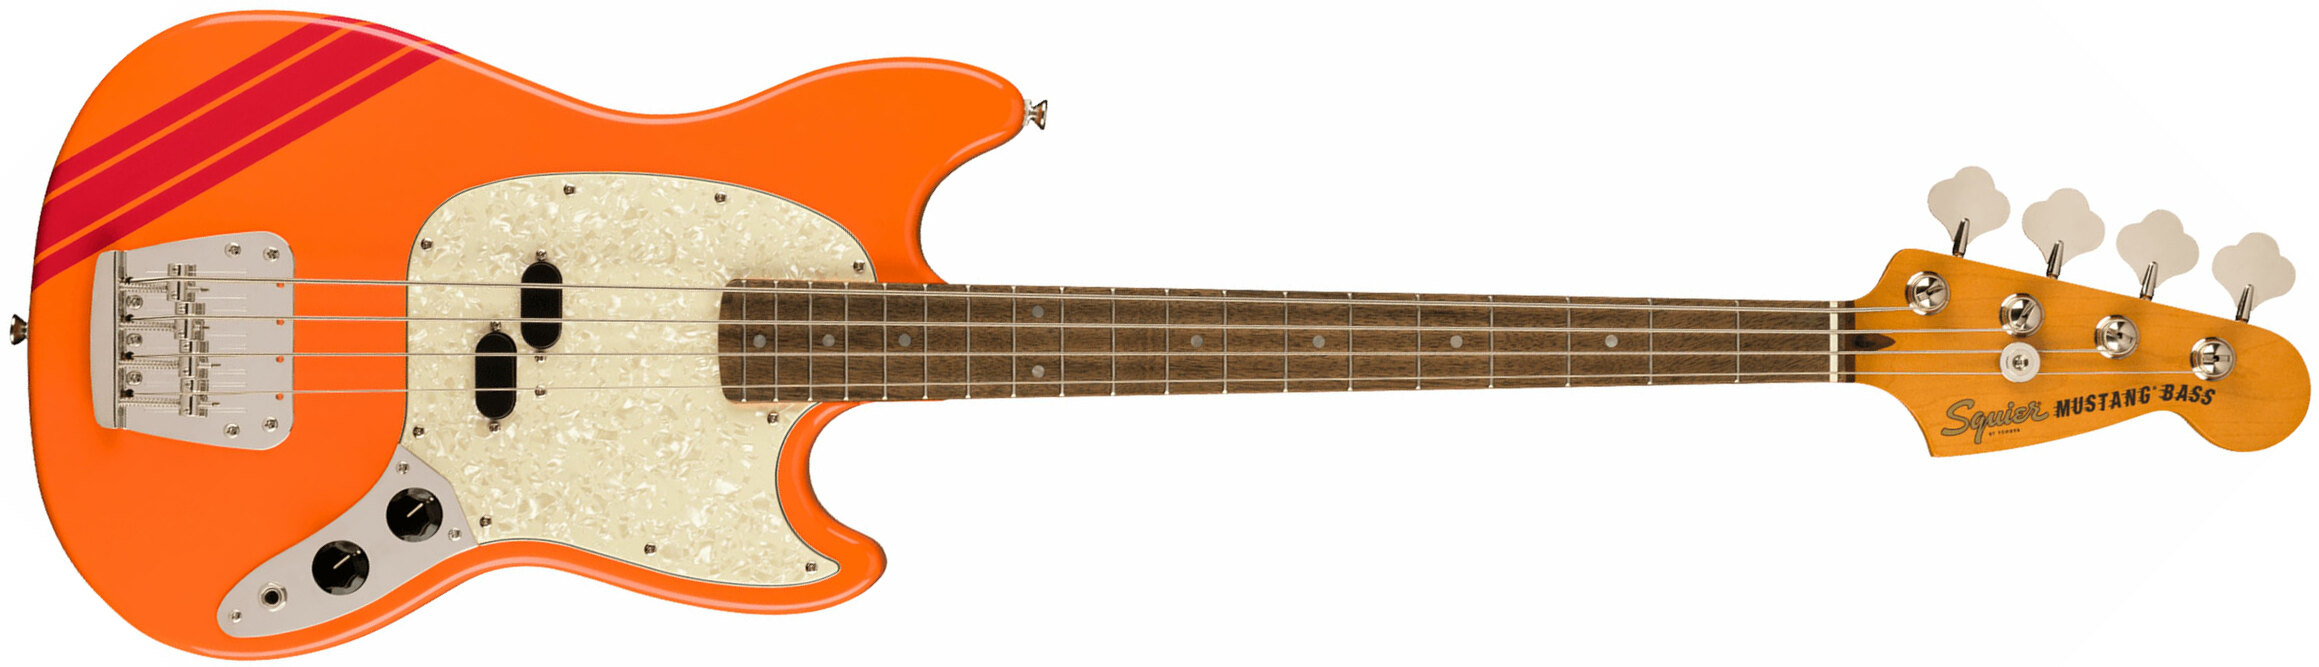 Squier Mustang Bass '60s Classic Vibe Competition Fsr Ltd Lau - Capri Orange - Basse Électrique Solid Body - Main picture